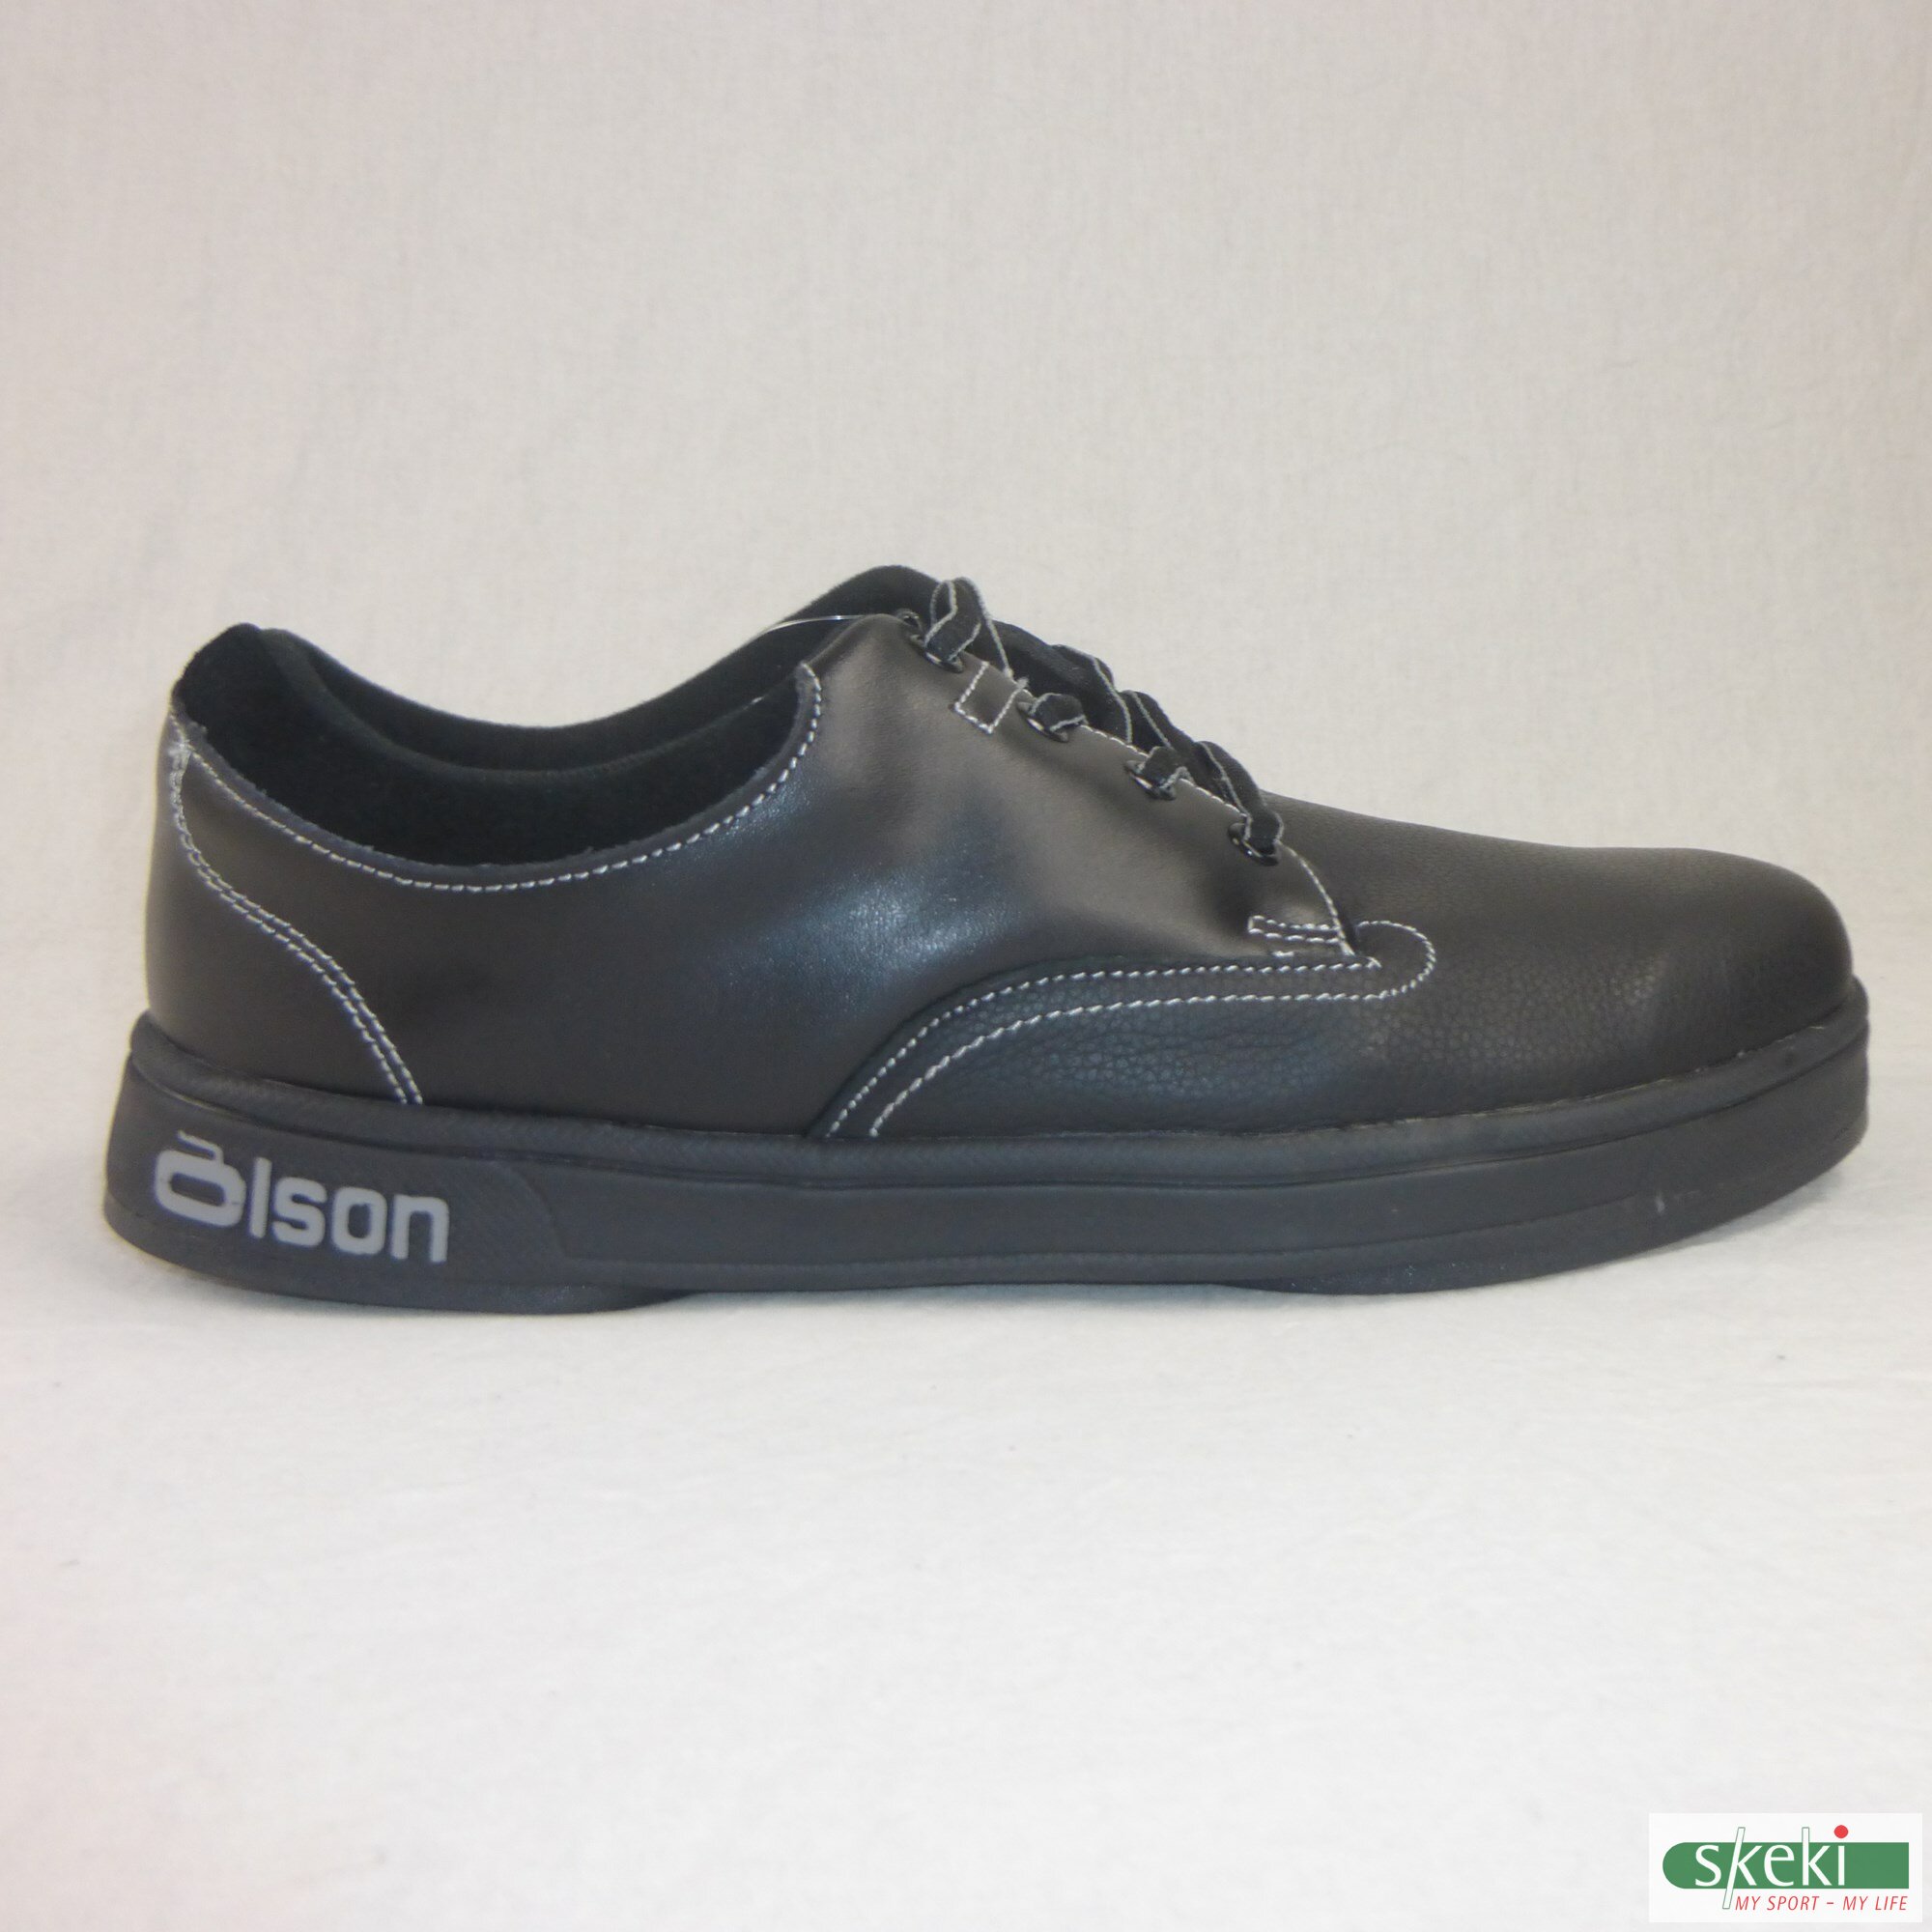 Olson curling shoe Genesis 1/4